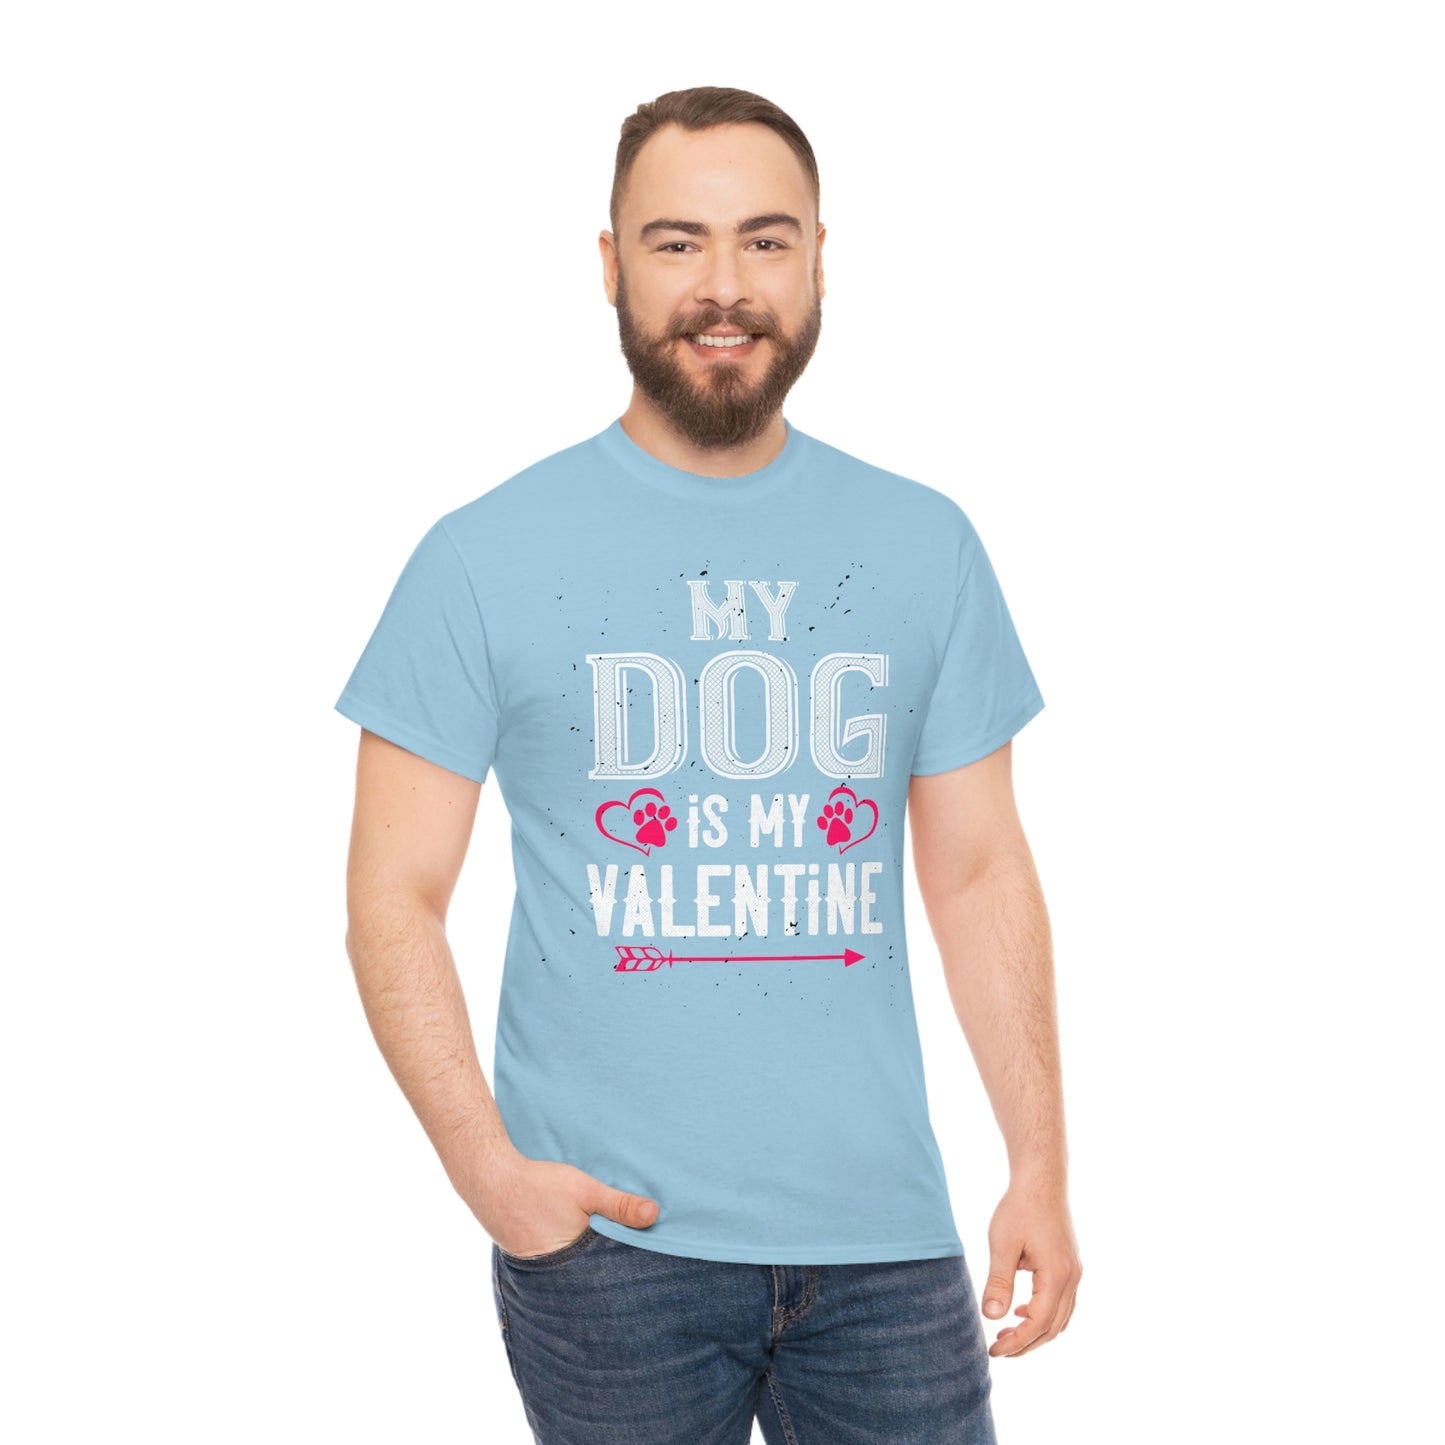 My Dog is my Valentine Cotton Tee